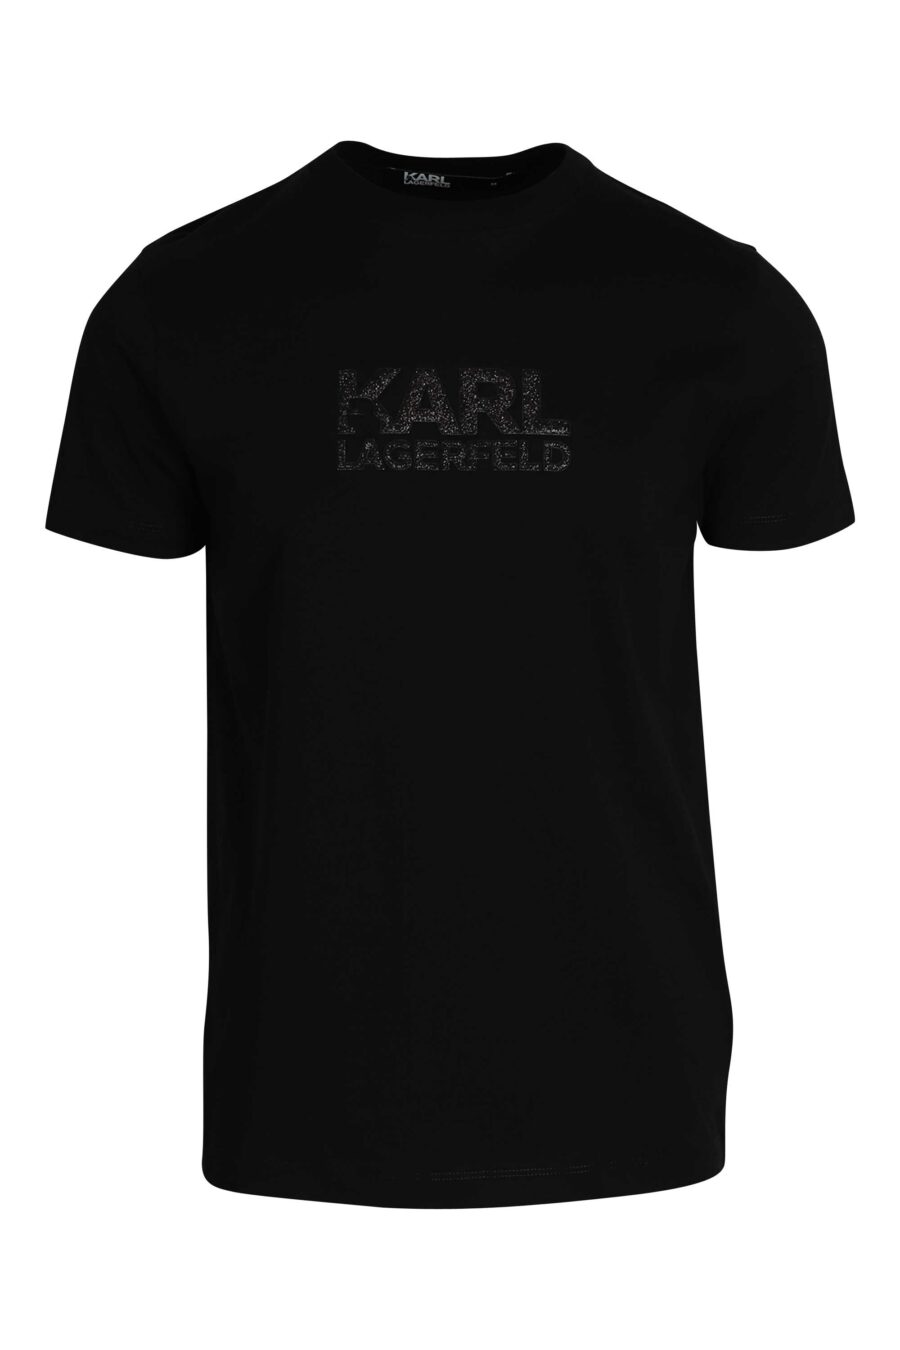 Schwarzes T-Shirt mit glänzendem schwarzem Maxilogo - 014543001